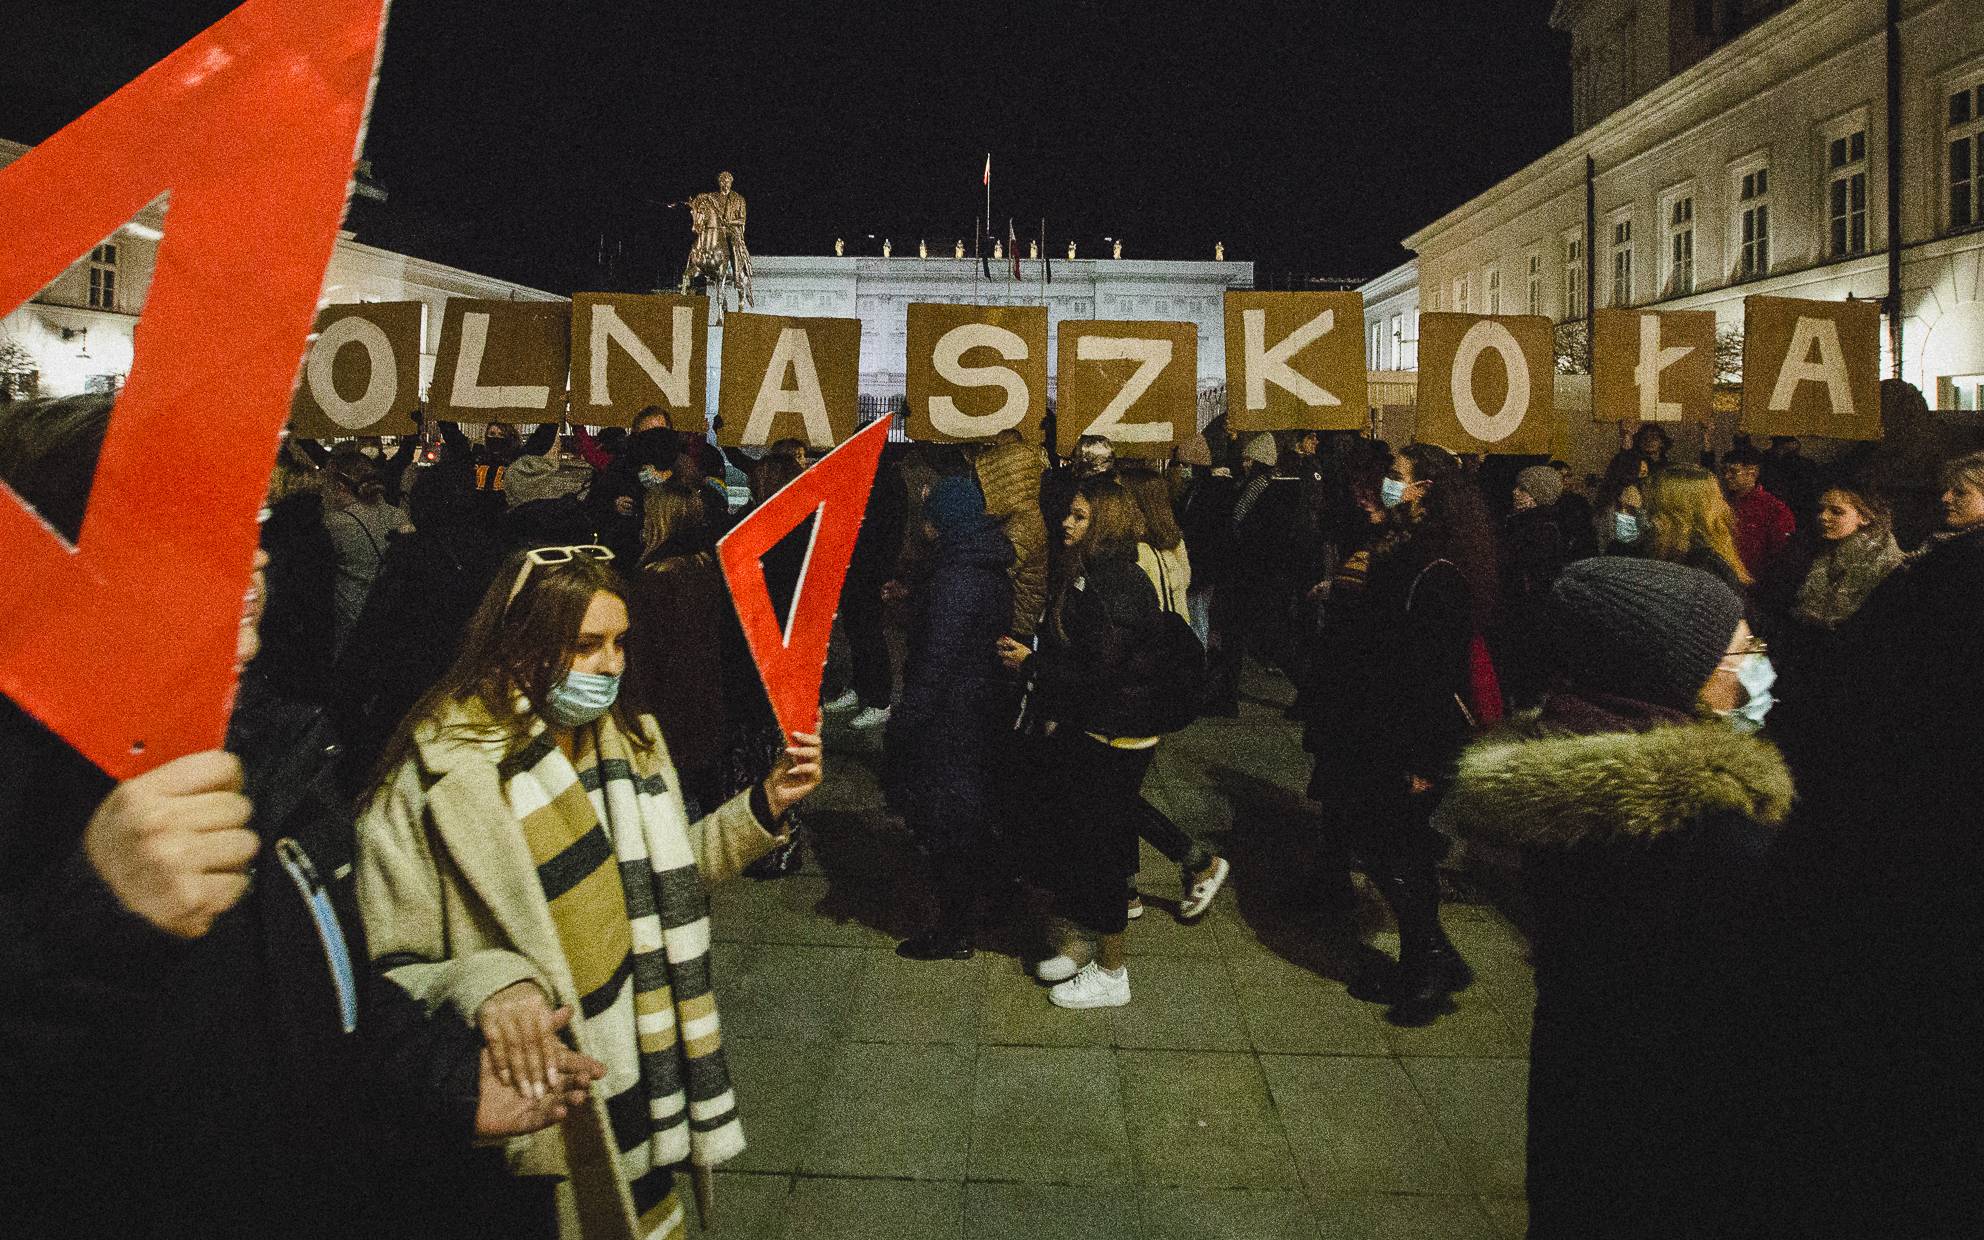 Warszawa, 13.02.2022. Wolna Szkoła: „Chcemy weta”. Polonez protestu pod Pałacem Prezydenckim